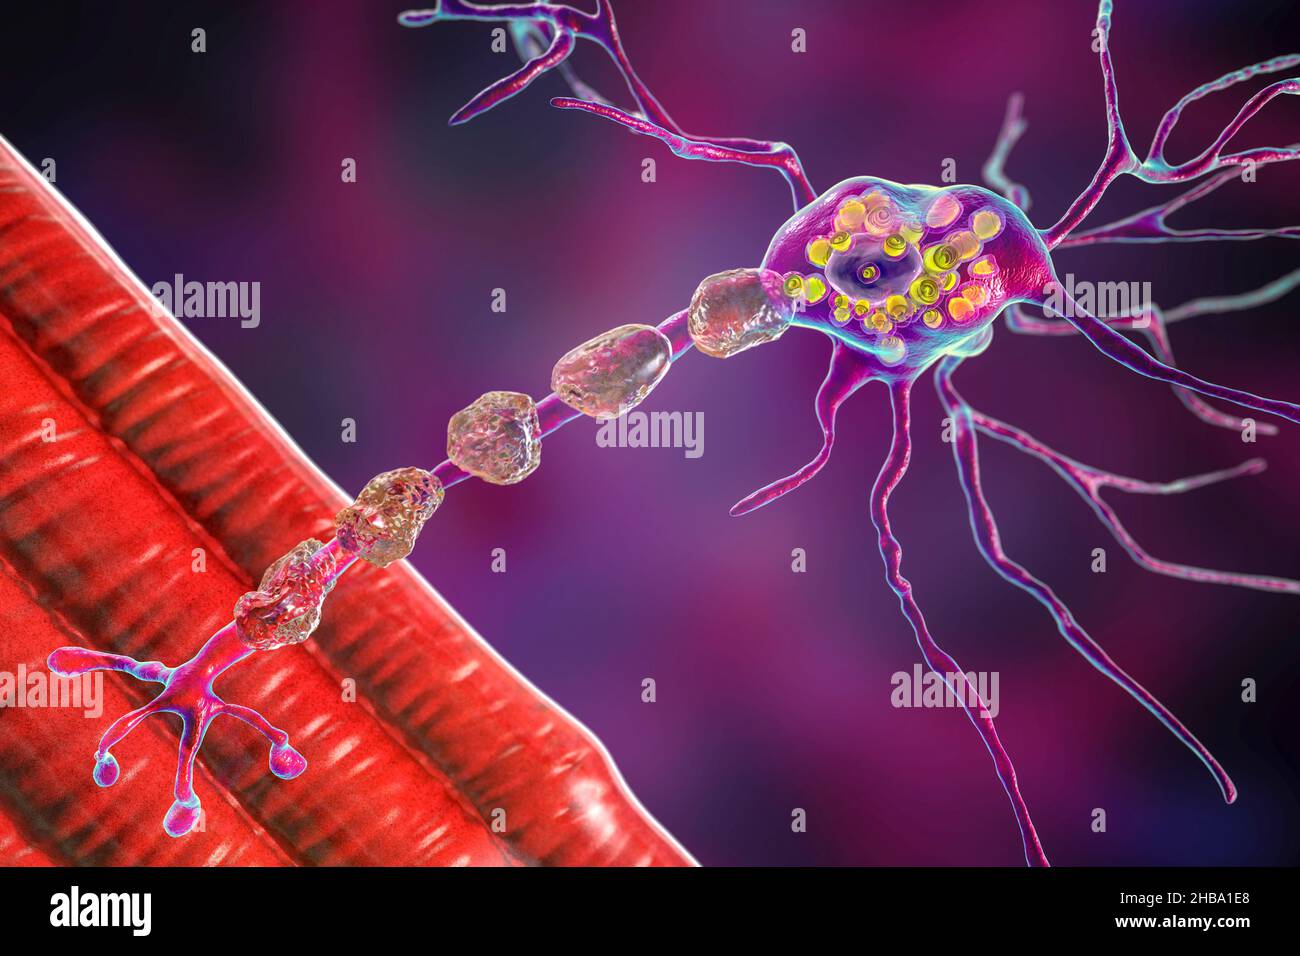 Neuronas en la enfermedad de Tay-Sachs. Ilustración que muestra neuronas hinchadas con inclusiones lamelares membranosas debido a la acumulación de gangliósidos en lisosomas, degradación de mielina. La enfermedad de Tay-Sachs es un trastorno que destruye progresivamente las neuronas cerebrales, es causada por una mutación en el gen HEXA del cromosoma 15 que conduce a la deficiencia de hexosaminidasa A. Tay-sachs se observa más comúnmente en los bebés, manifestándose en debilidad muscular y disminución de la función motora, pérdida de visión y audición, y discapacidad intelectual. Foto de stock